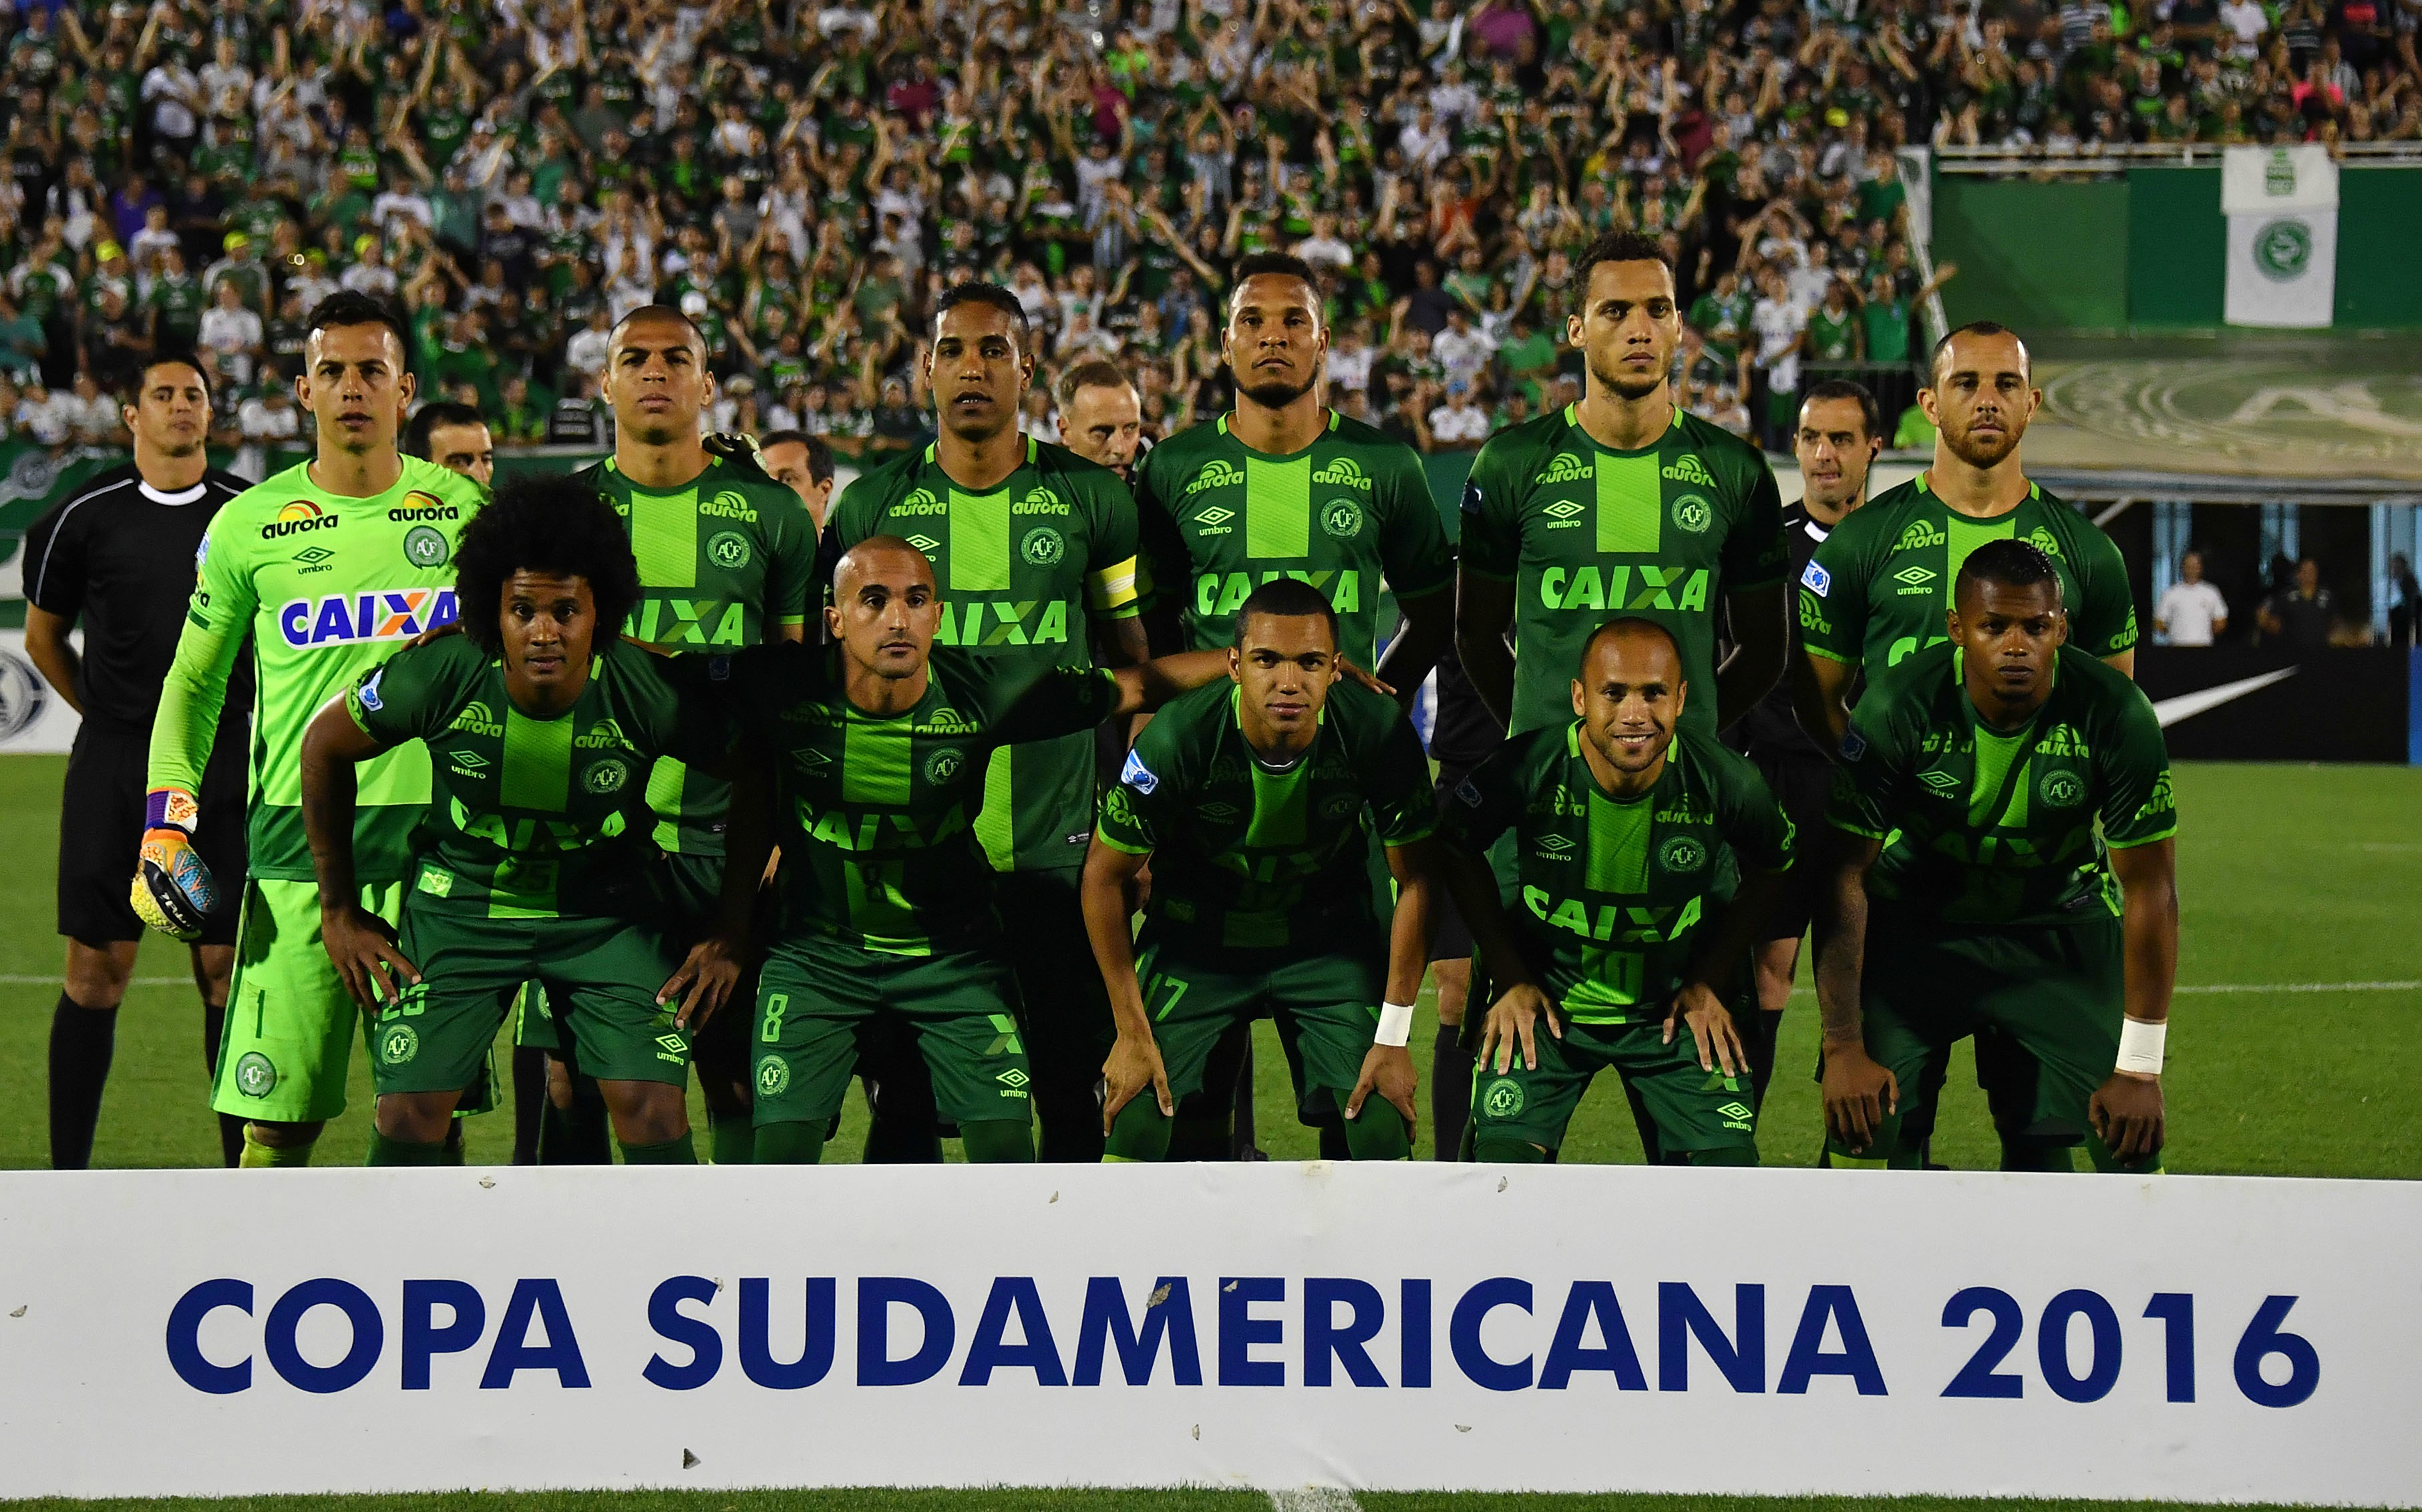 Brazil's Chapecoense soccer team